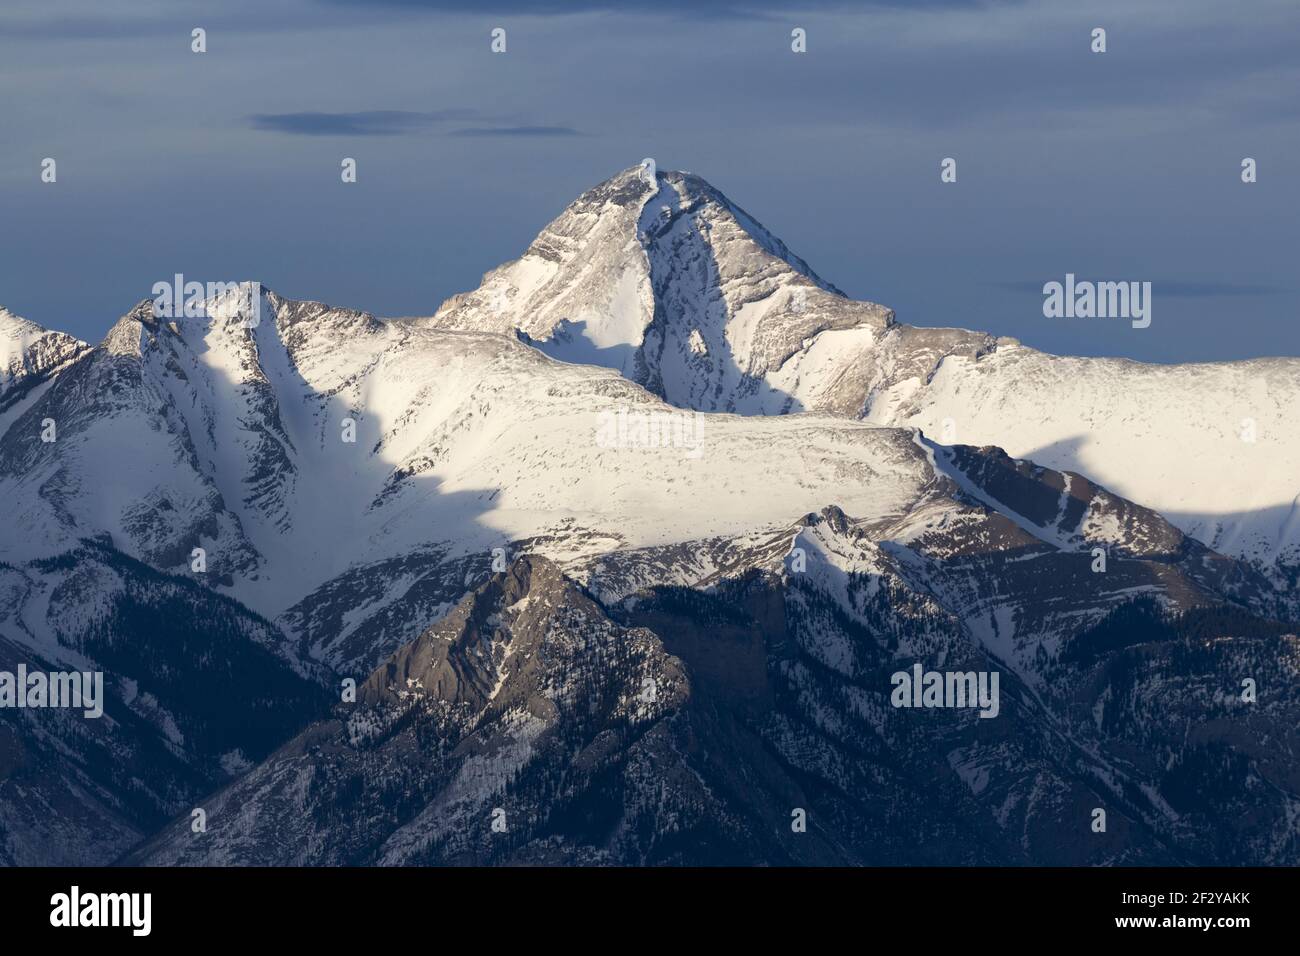 Mont Aylmer enneigé, le plus haut sommet des montagnes à proximité de Banff. Paysage de la fin de l'hiver dans les Rocheuses canadiennes Banque D'Images